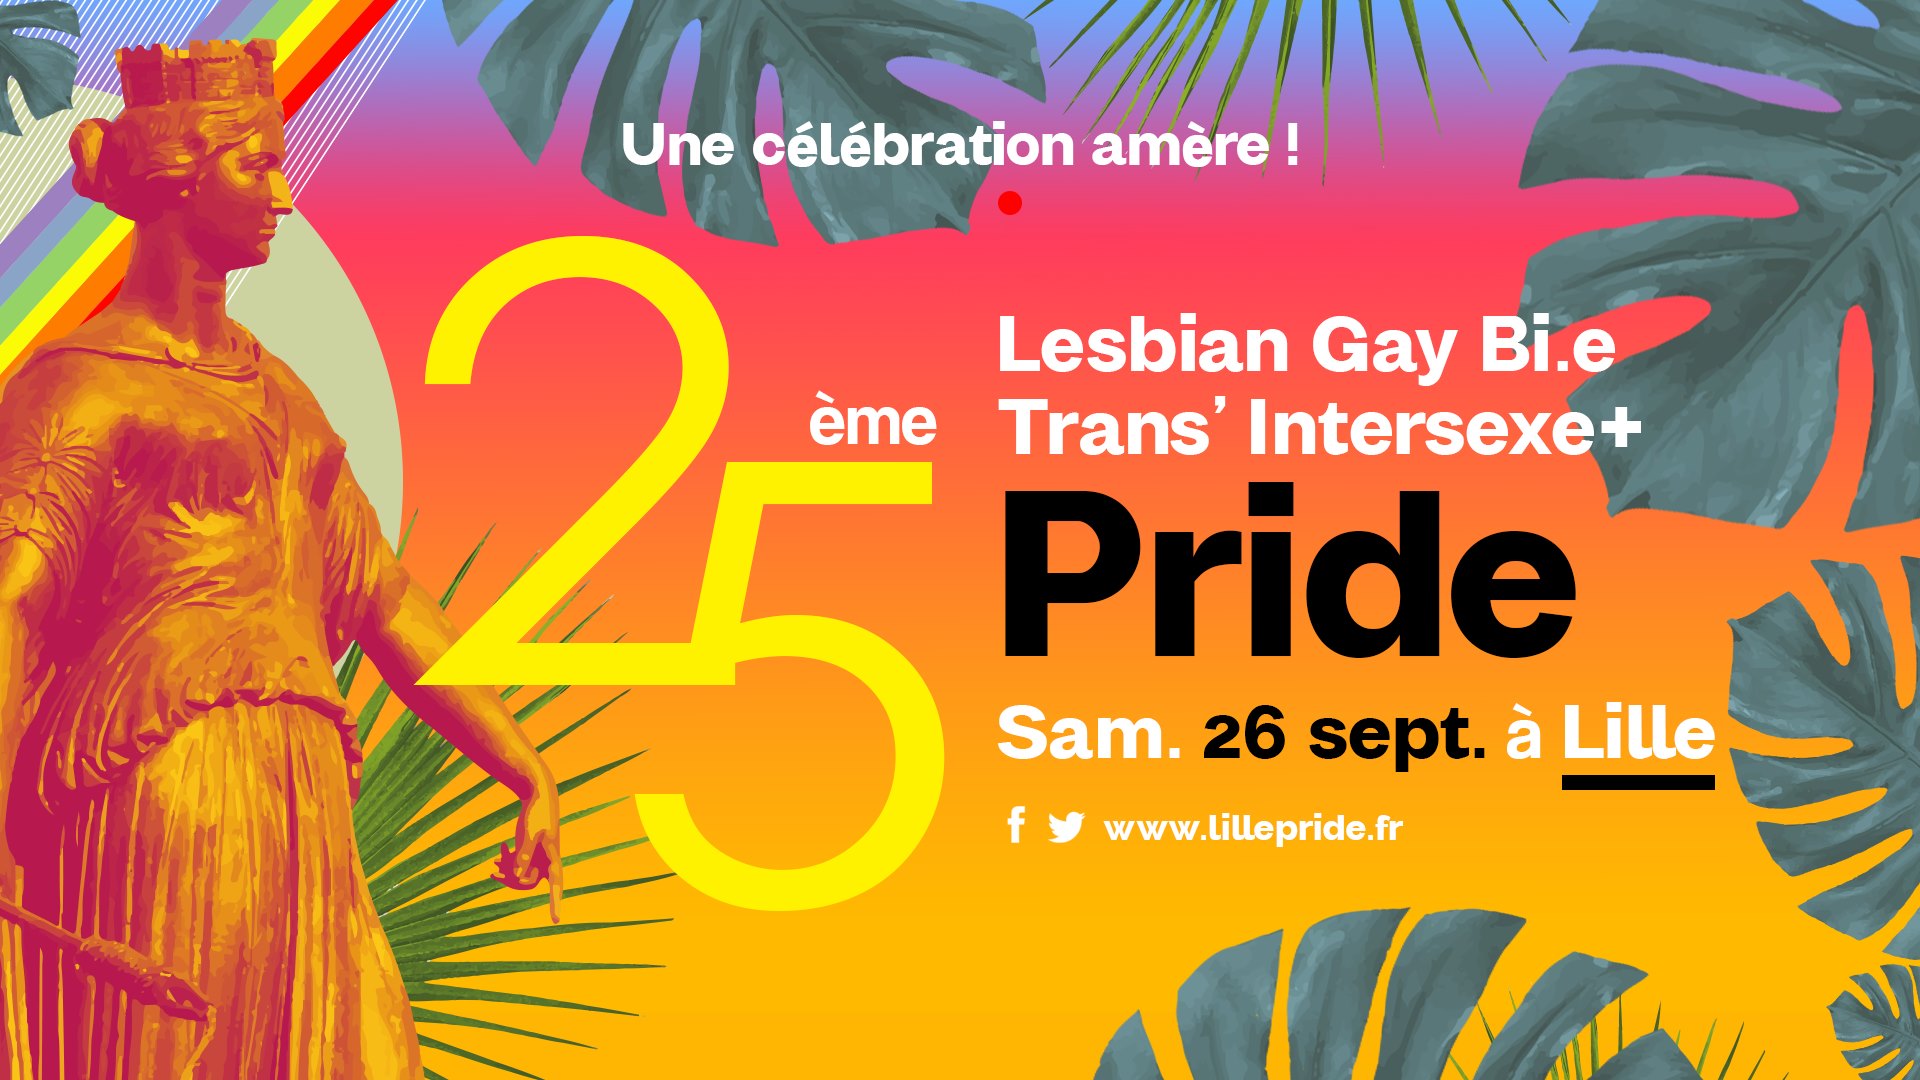 La LGBTI + Pride Lille le village, la marche des fiertés, les soirées